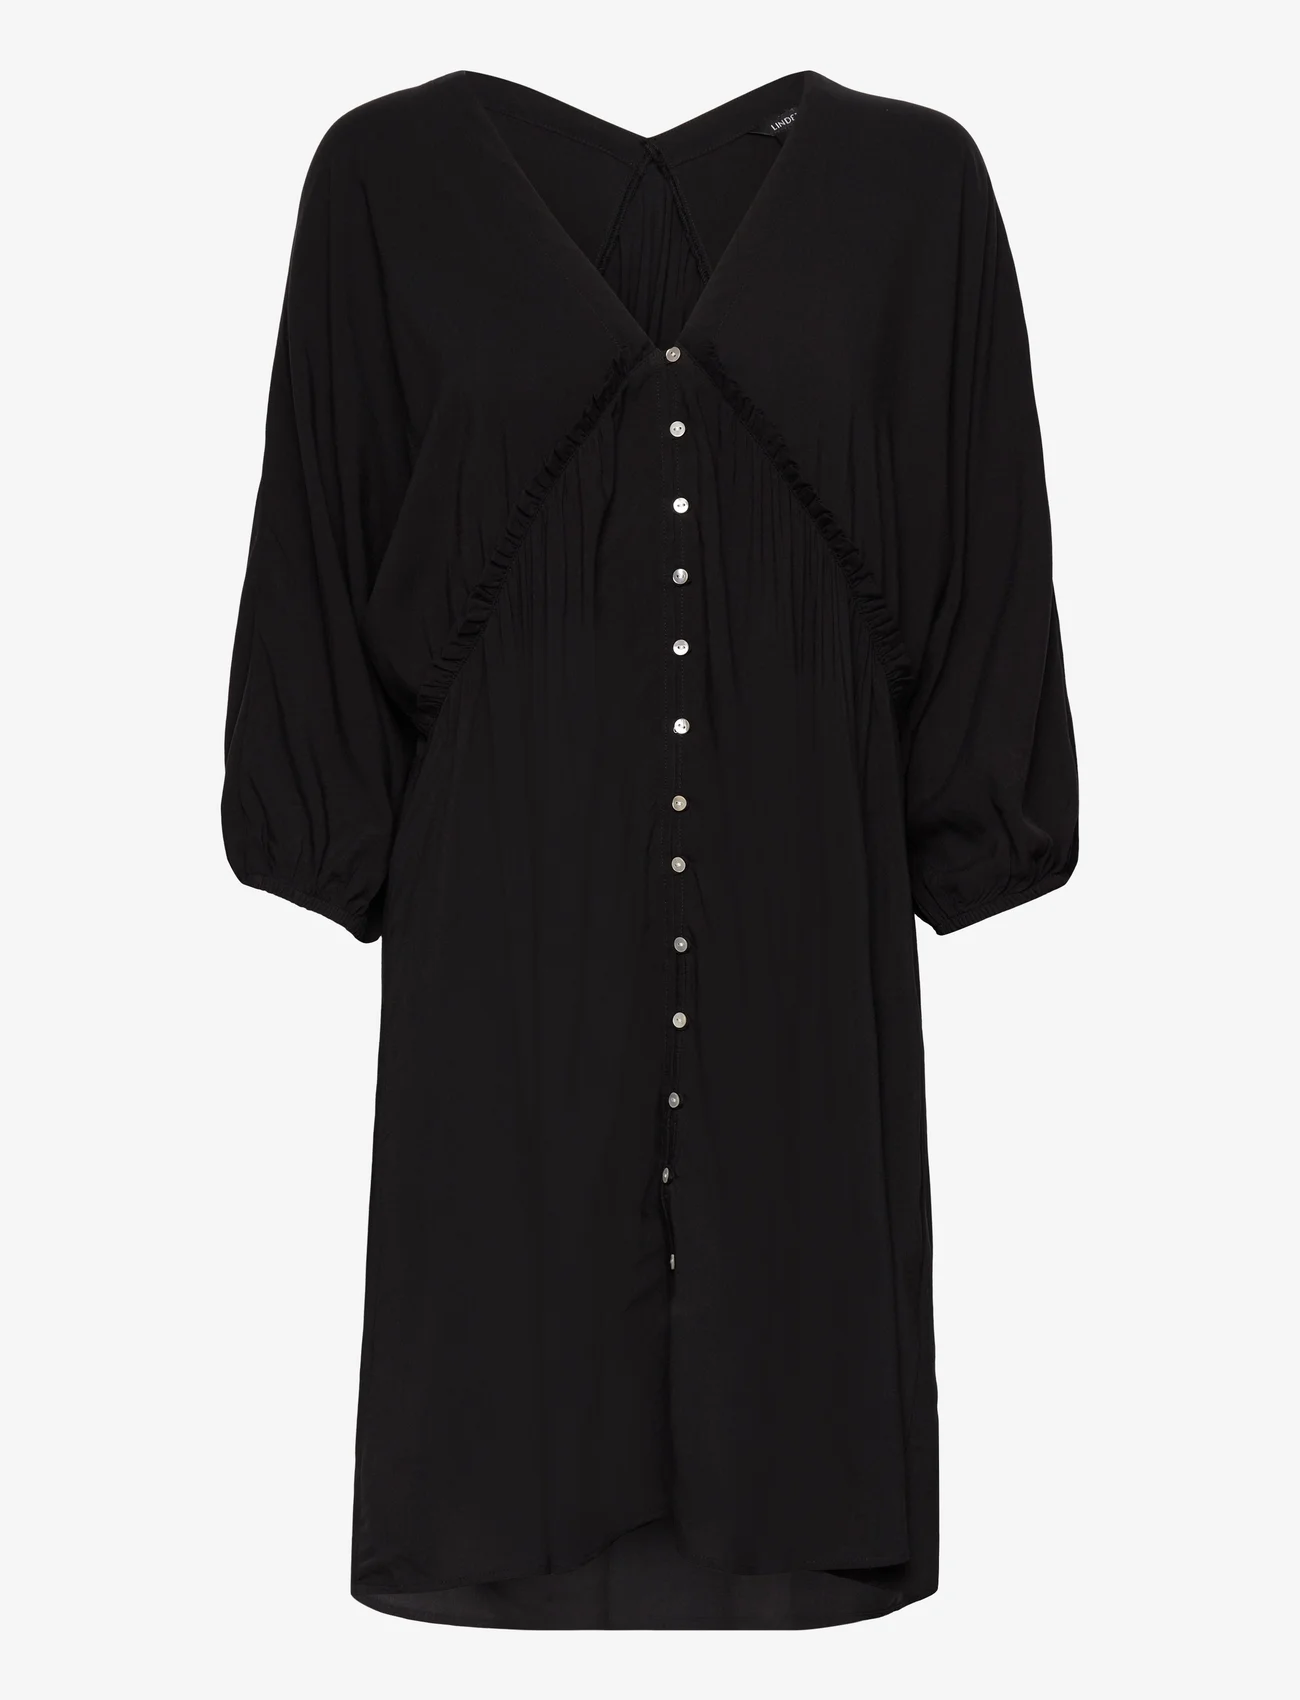 Lindex - Dress Hariet - mažiausios kainos - black - 0